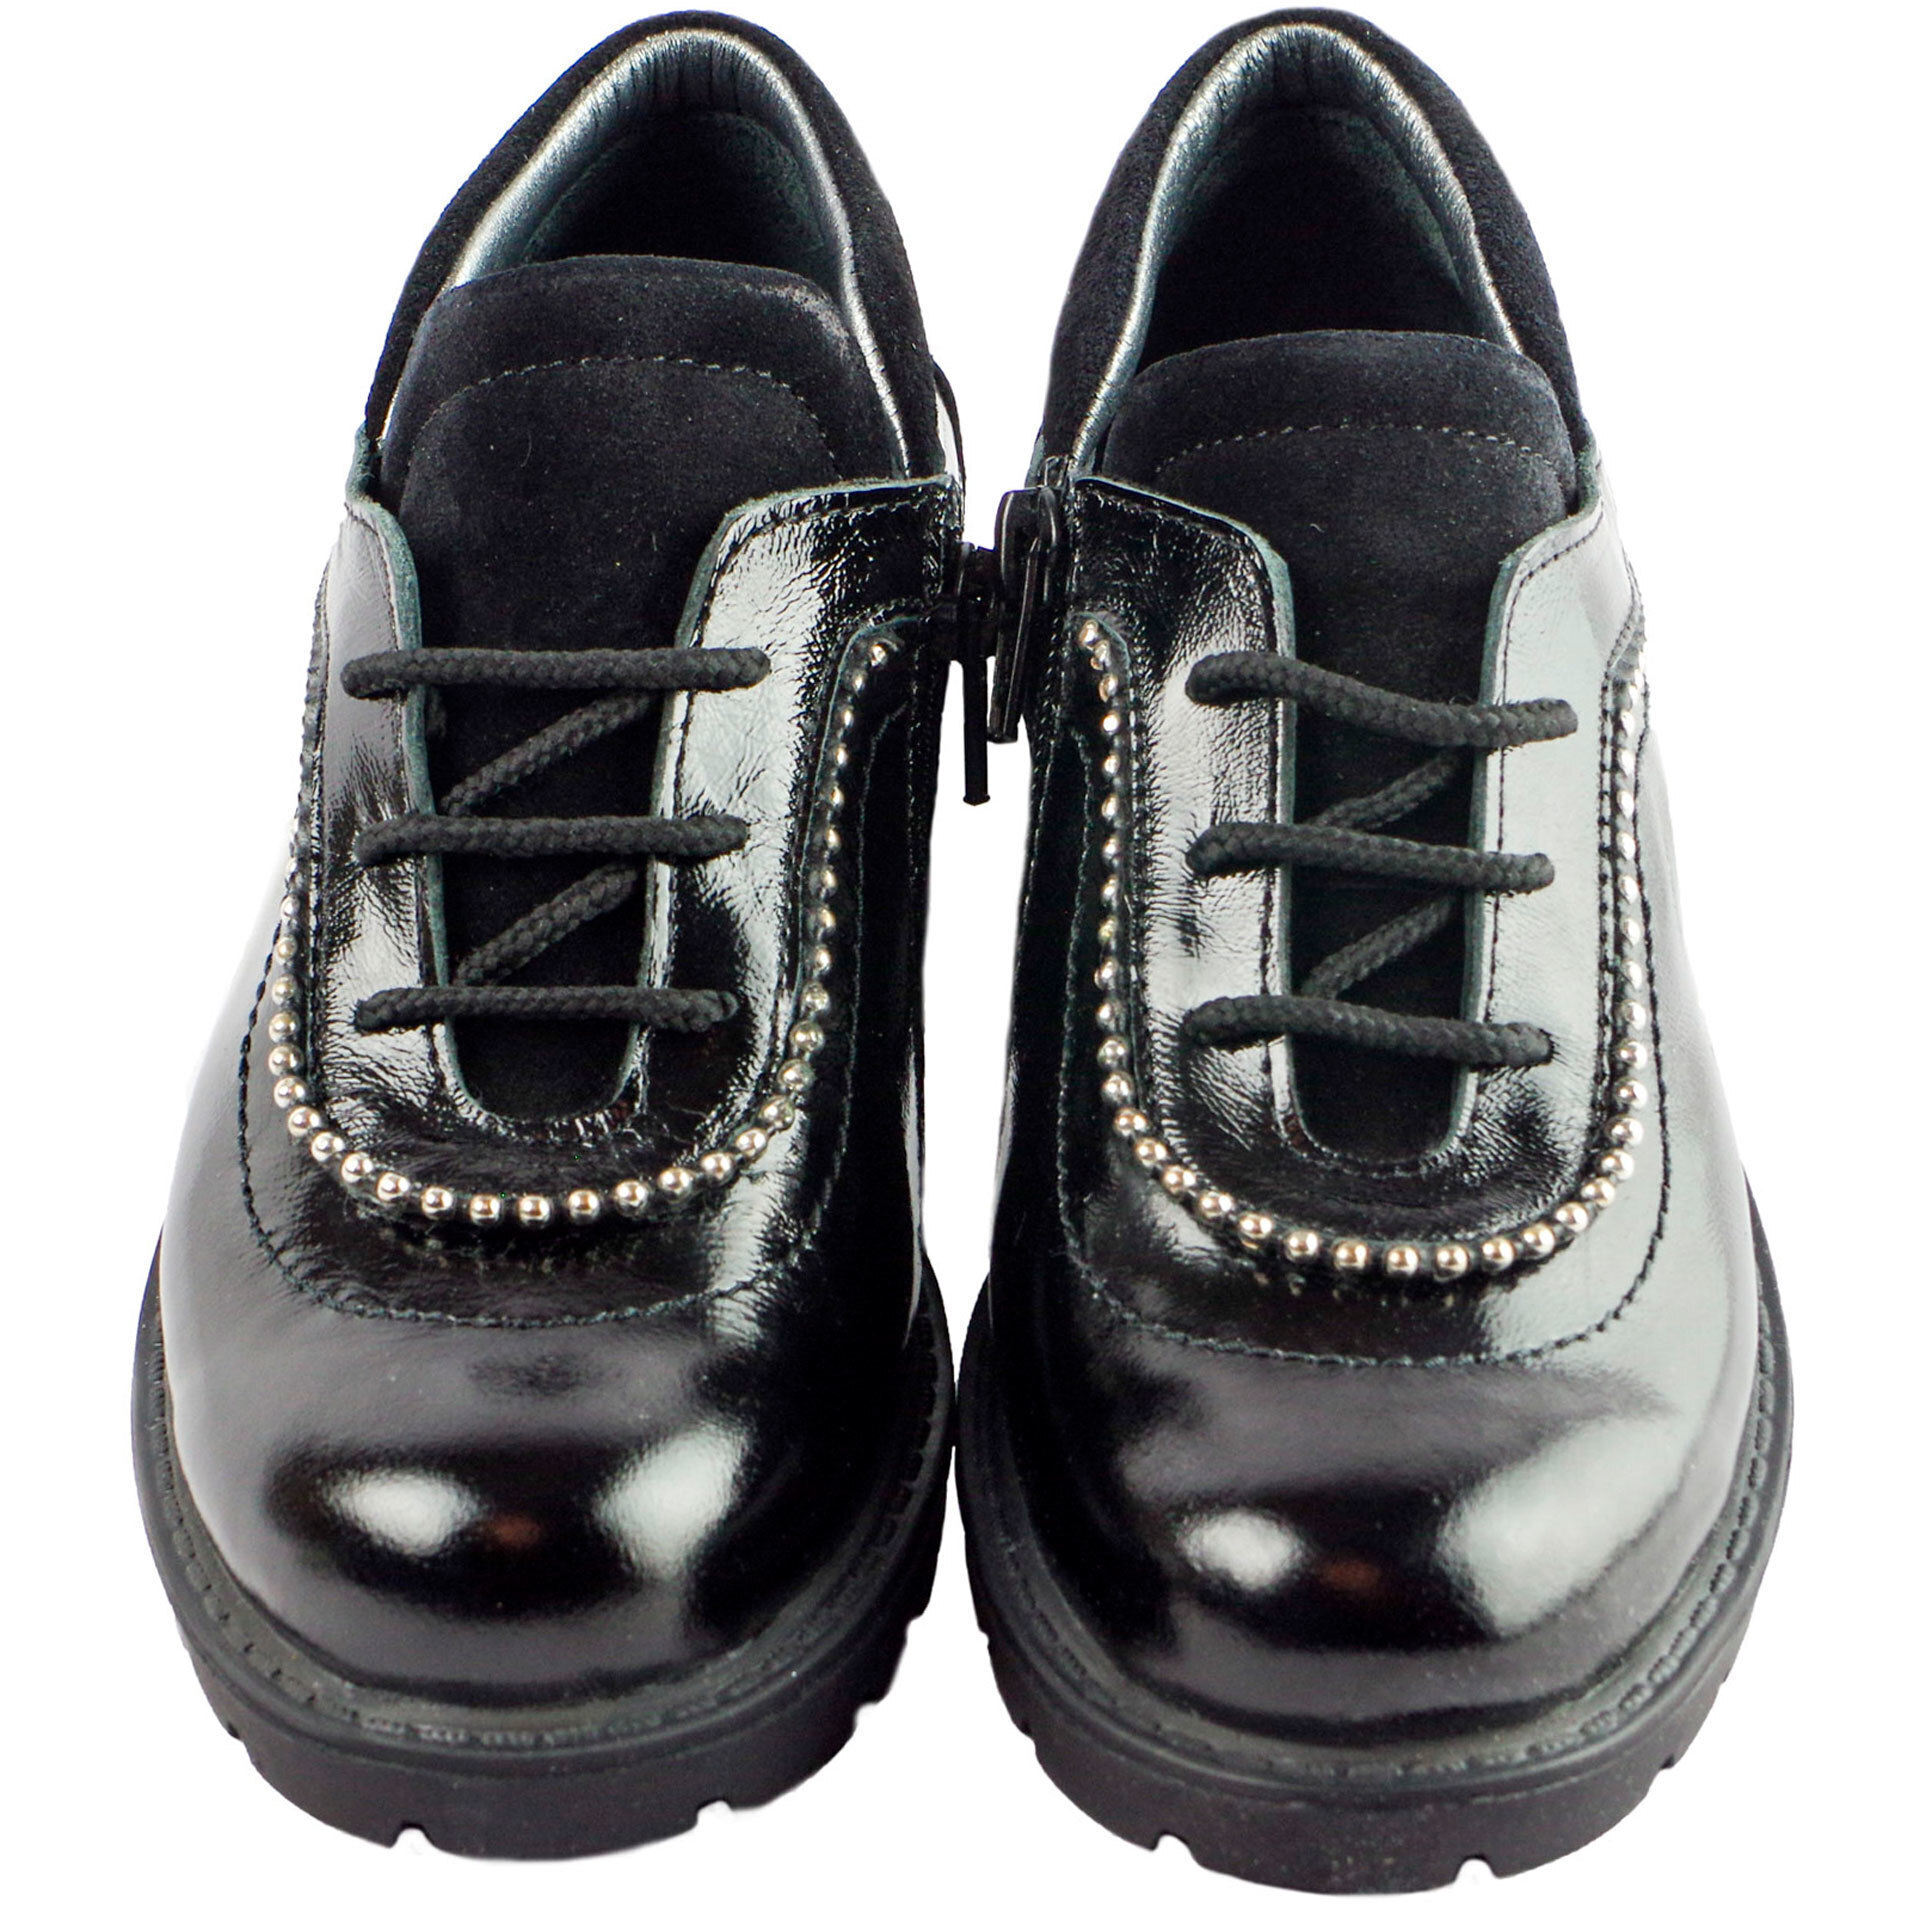 Туфли лаковые (1562) материал Лаковая кожа, цвет Черный  для девочки 31-36 размеры – Sole Kids. Фото 2